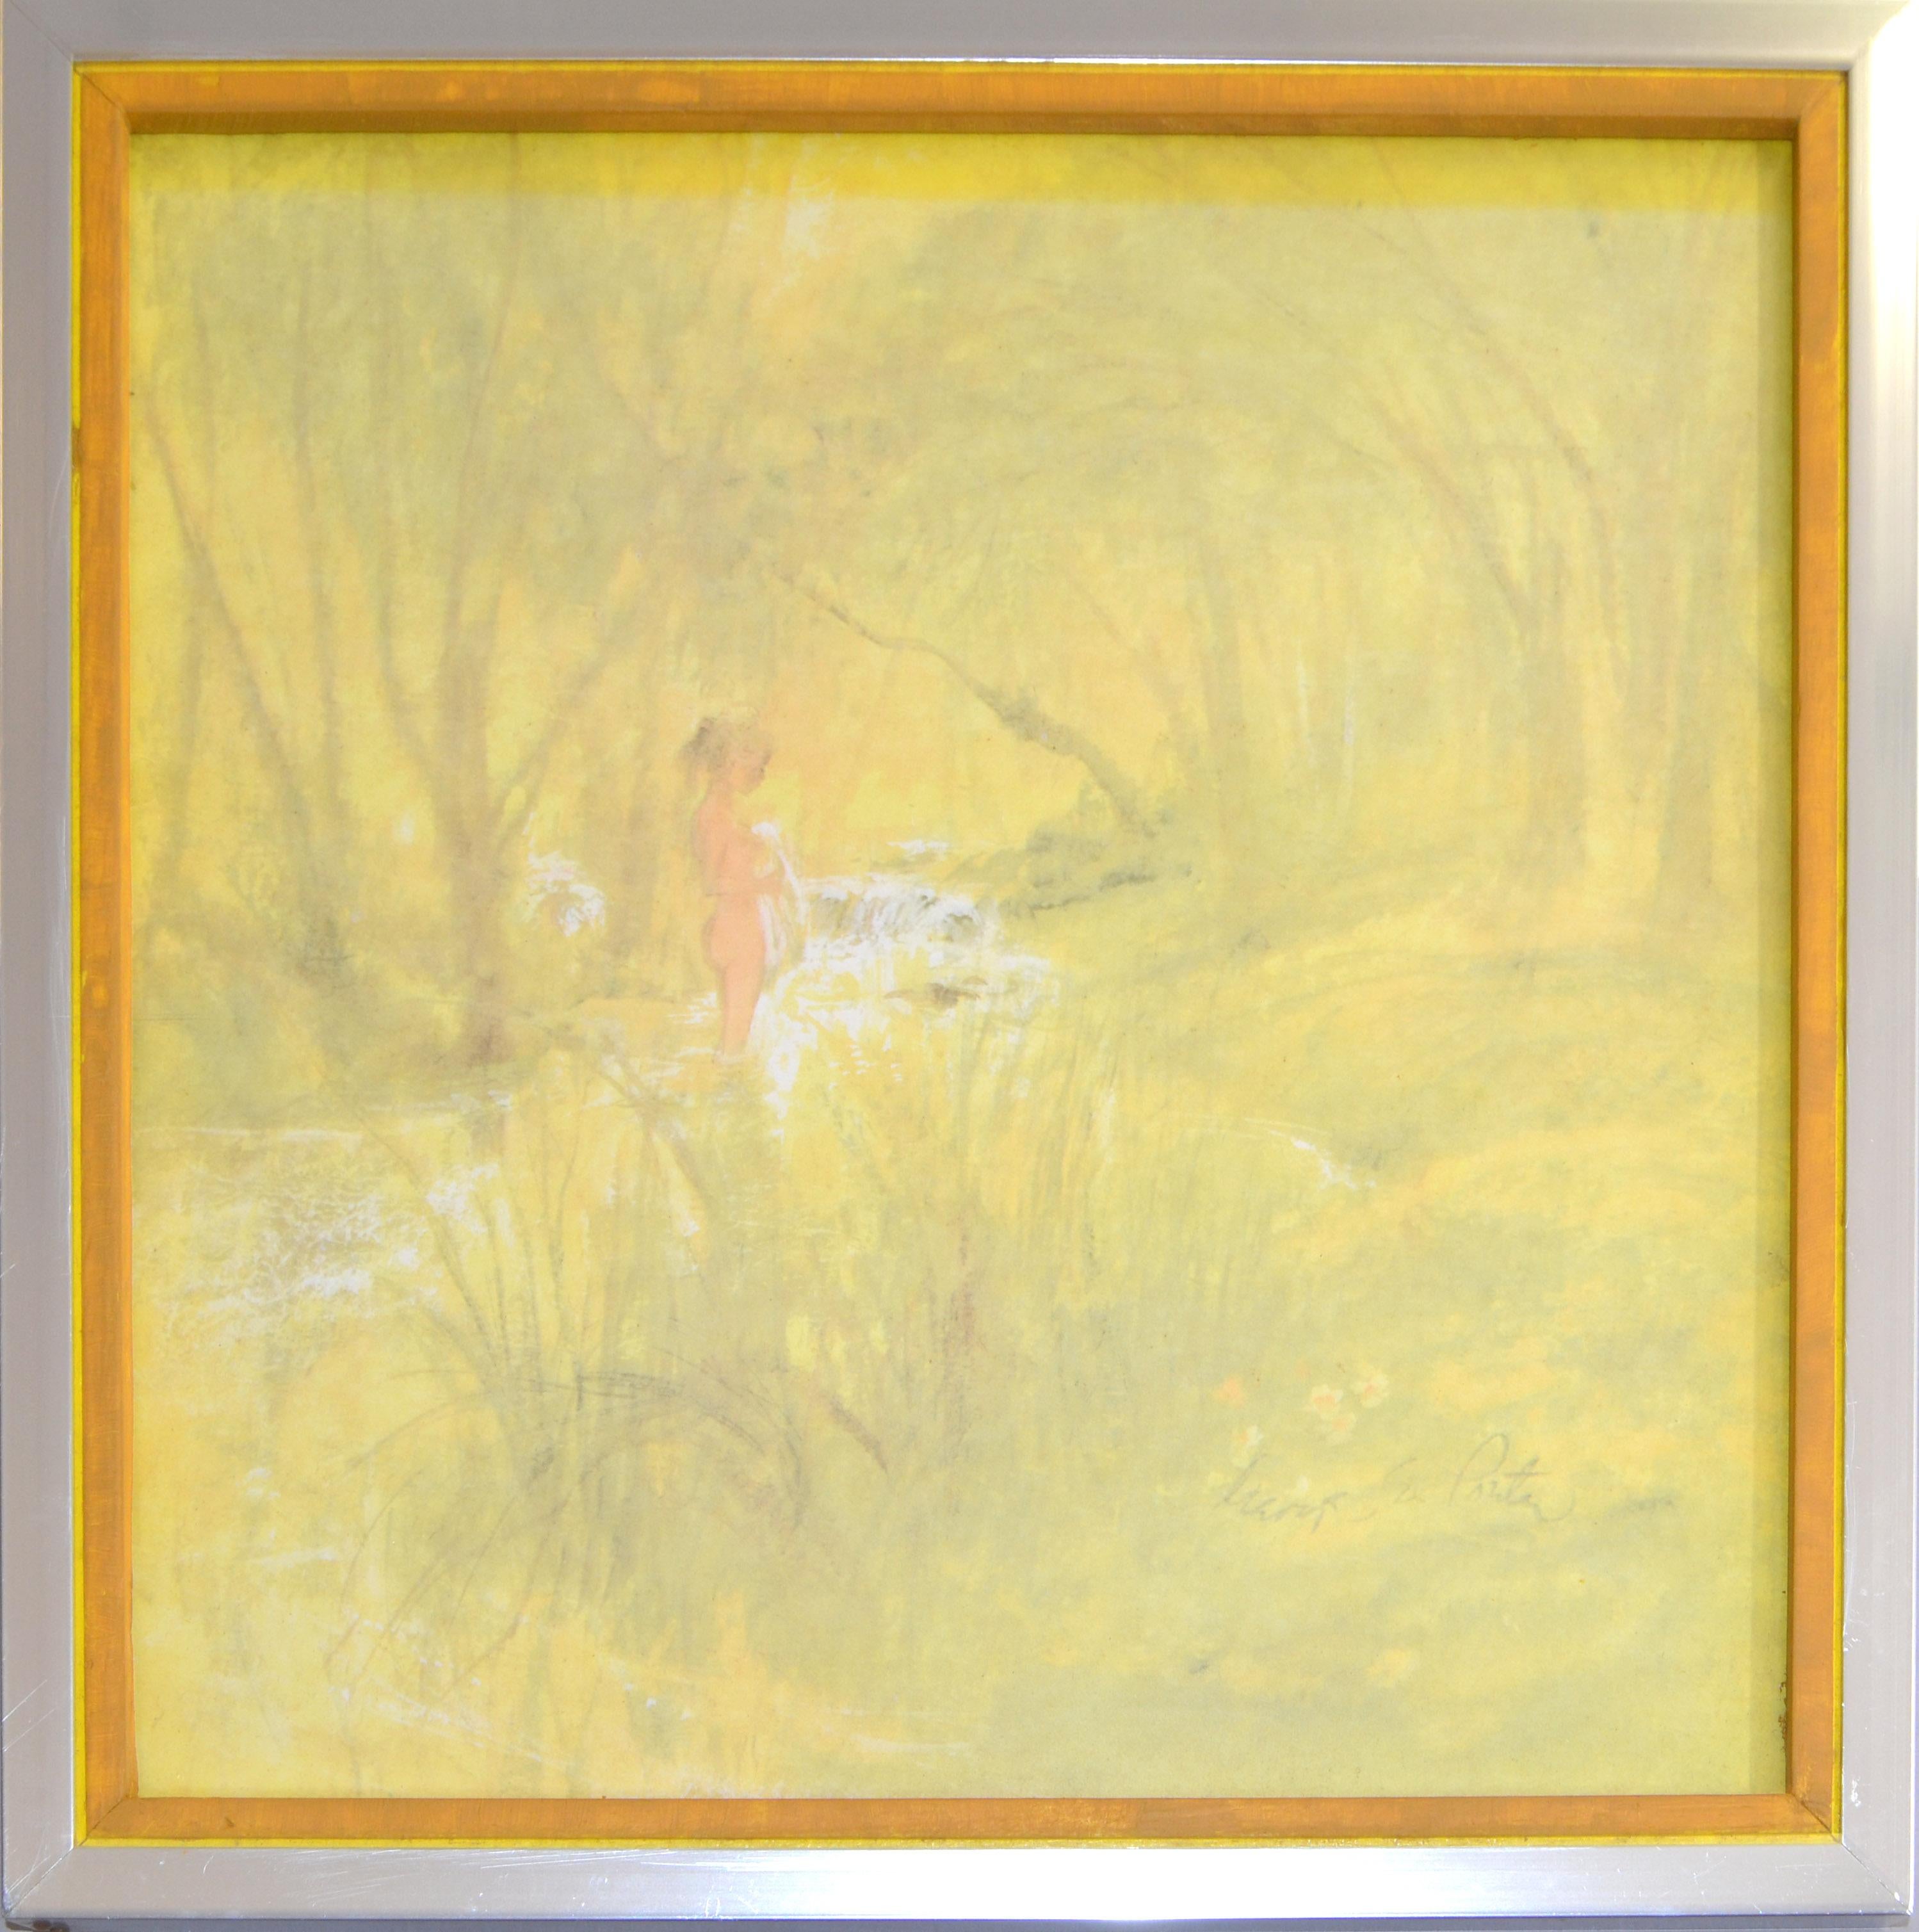 Cadre carré chromé signé Paysage et nu Aquarelle sur toile sur carton.
Teintes très douces de couleurs jaunes représentant une fille nue se baignant à la crique.
Signé sur l'œuvre d'art. 
La peinture sans le cadre mesure : 11.38 x 11.38 pouces.